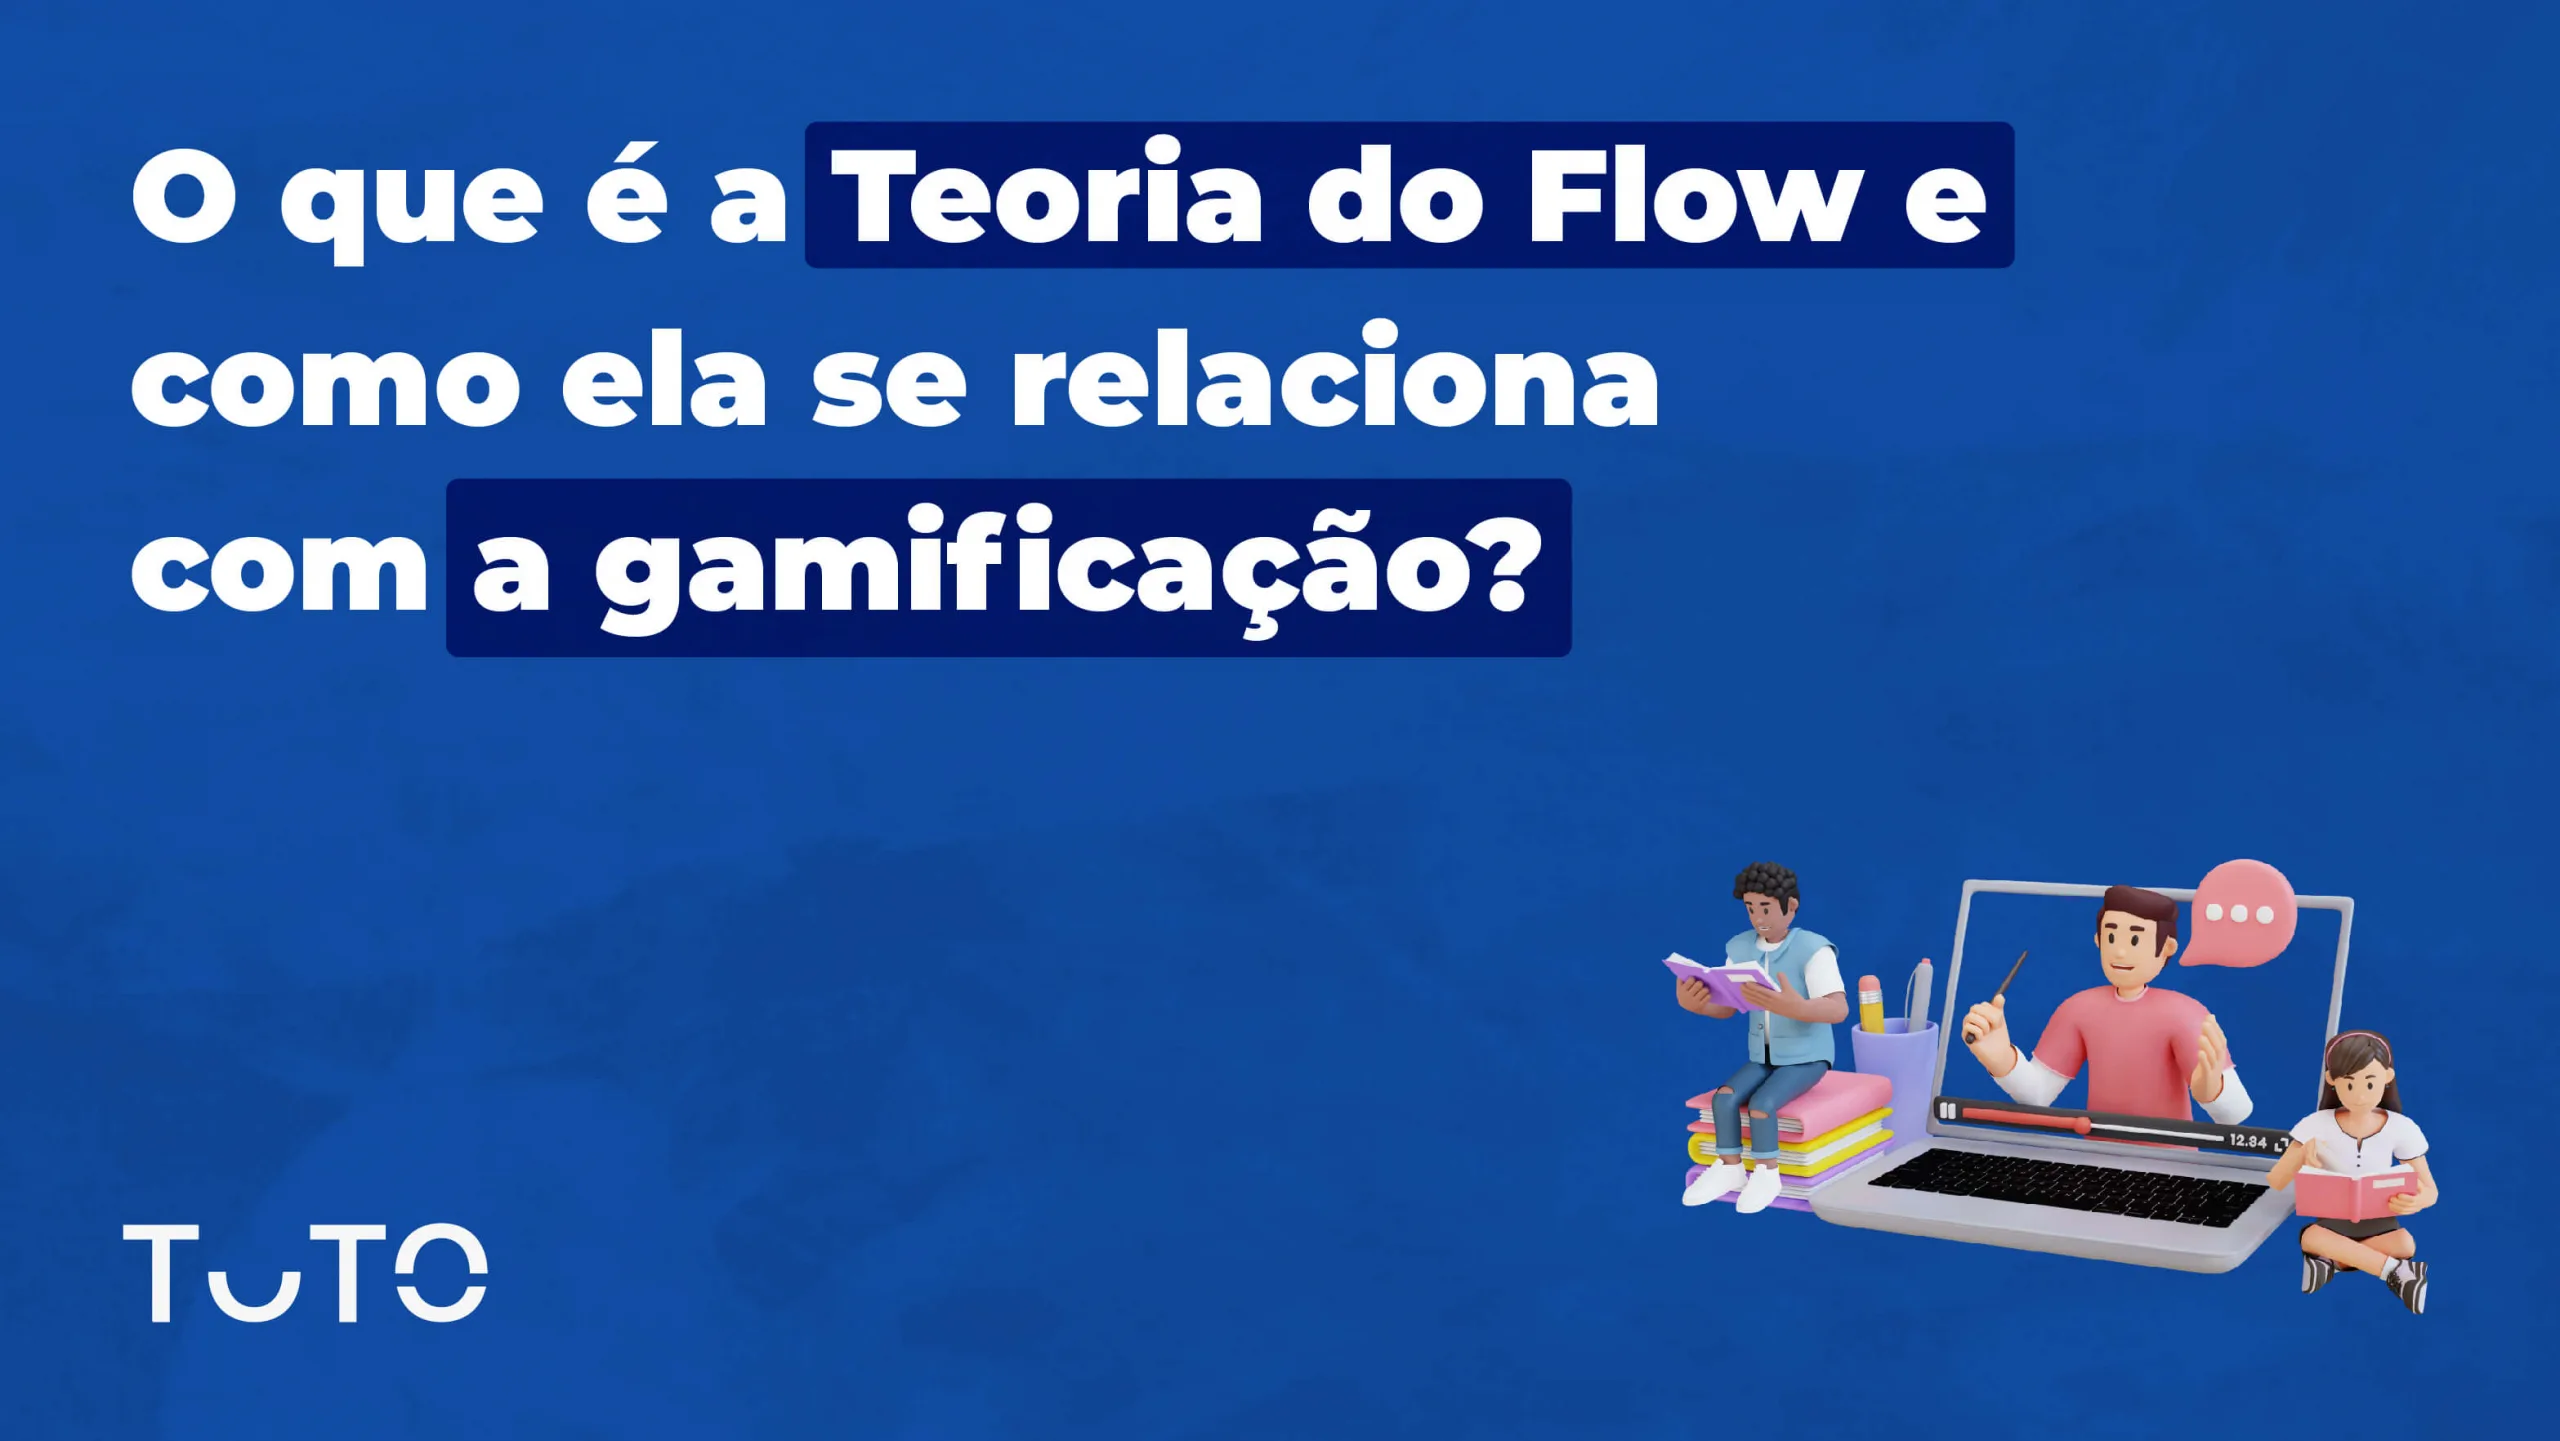 O que é a Teoria do Flow e qual a relação com a gamificação?